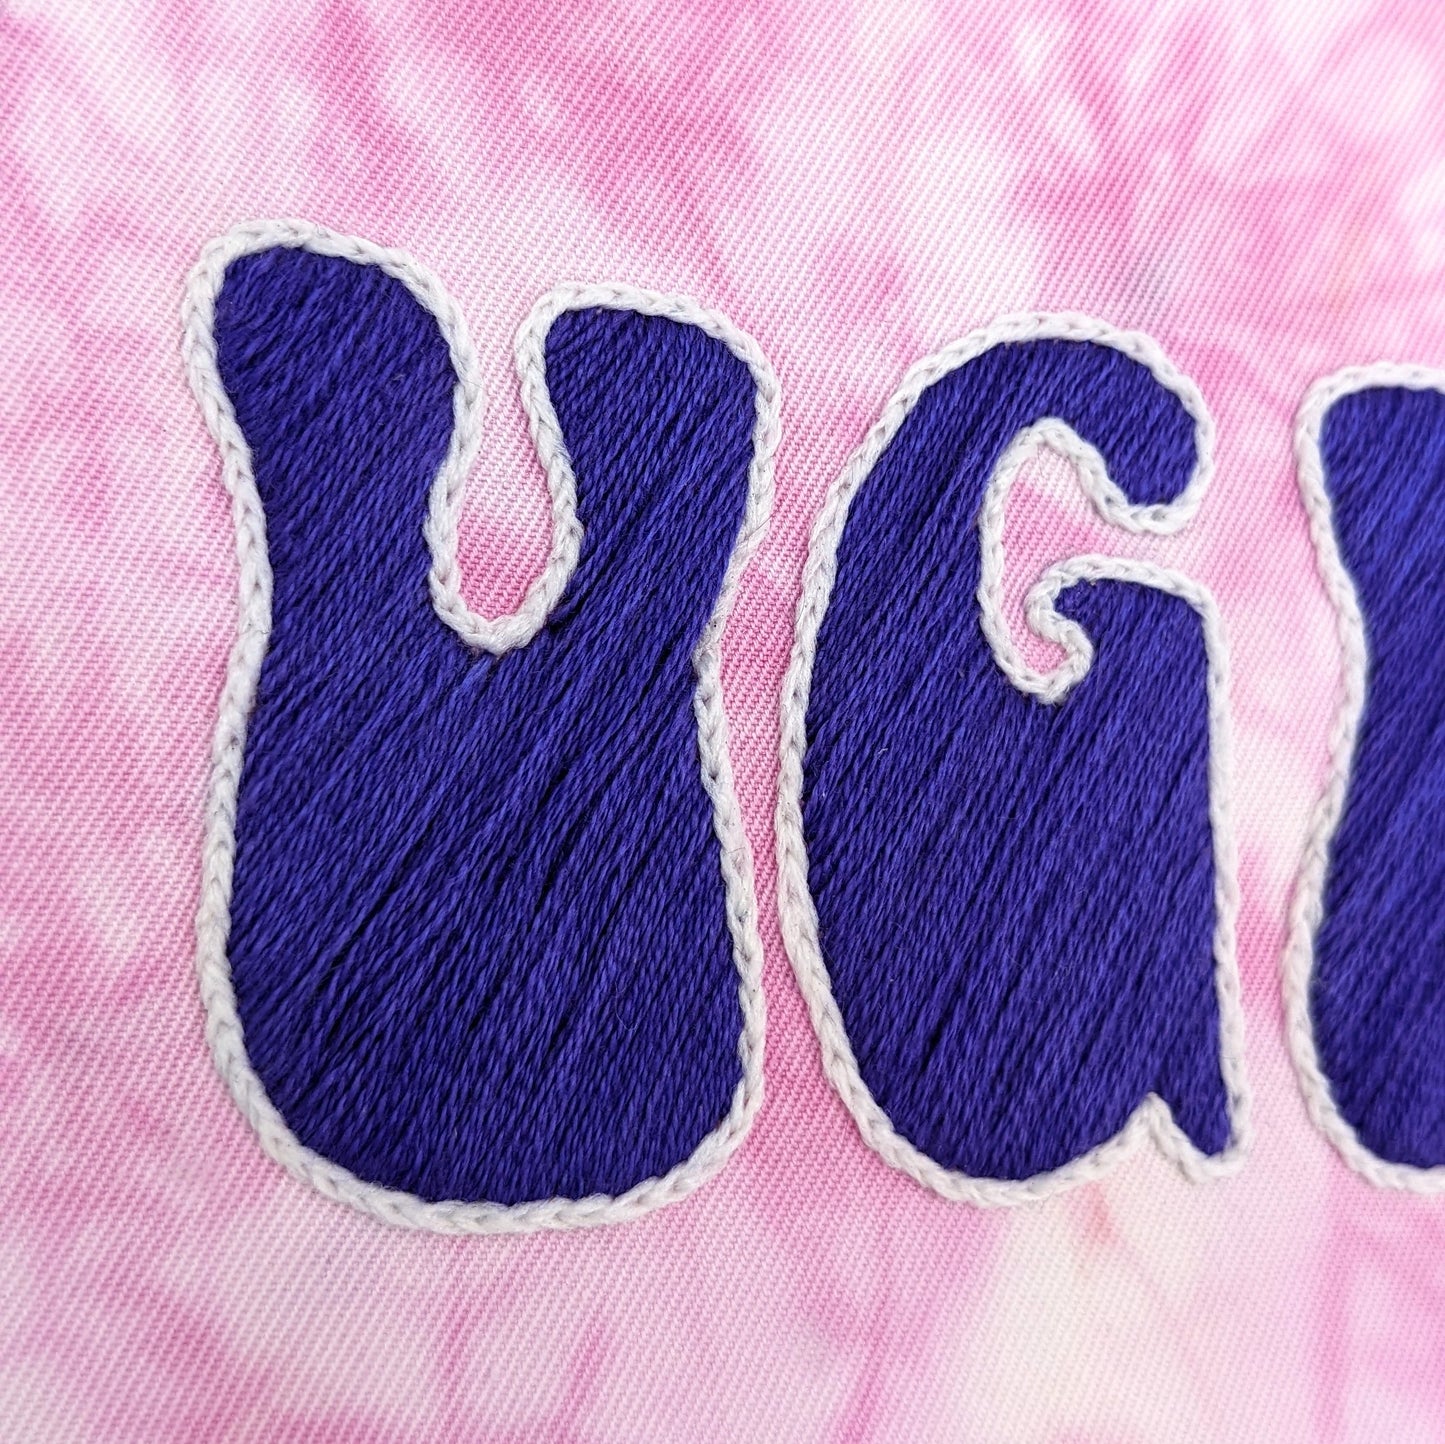 Groovy Tie-Dye Ugh Embroidery Hoop Art